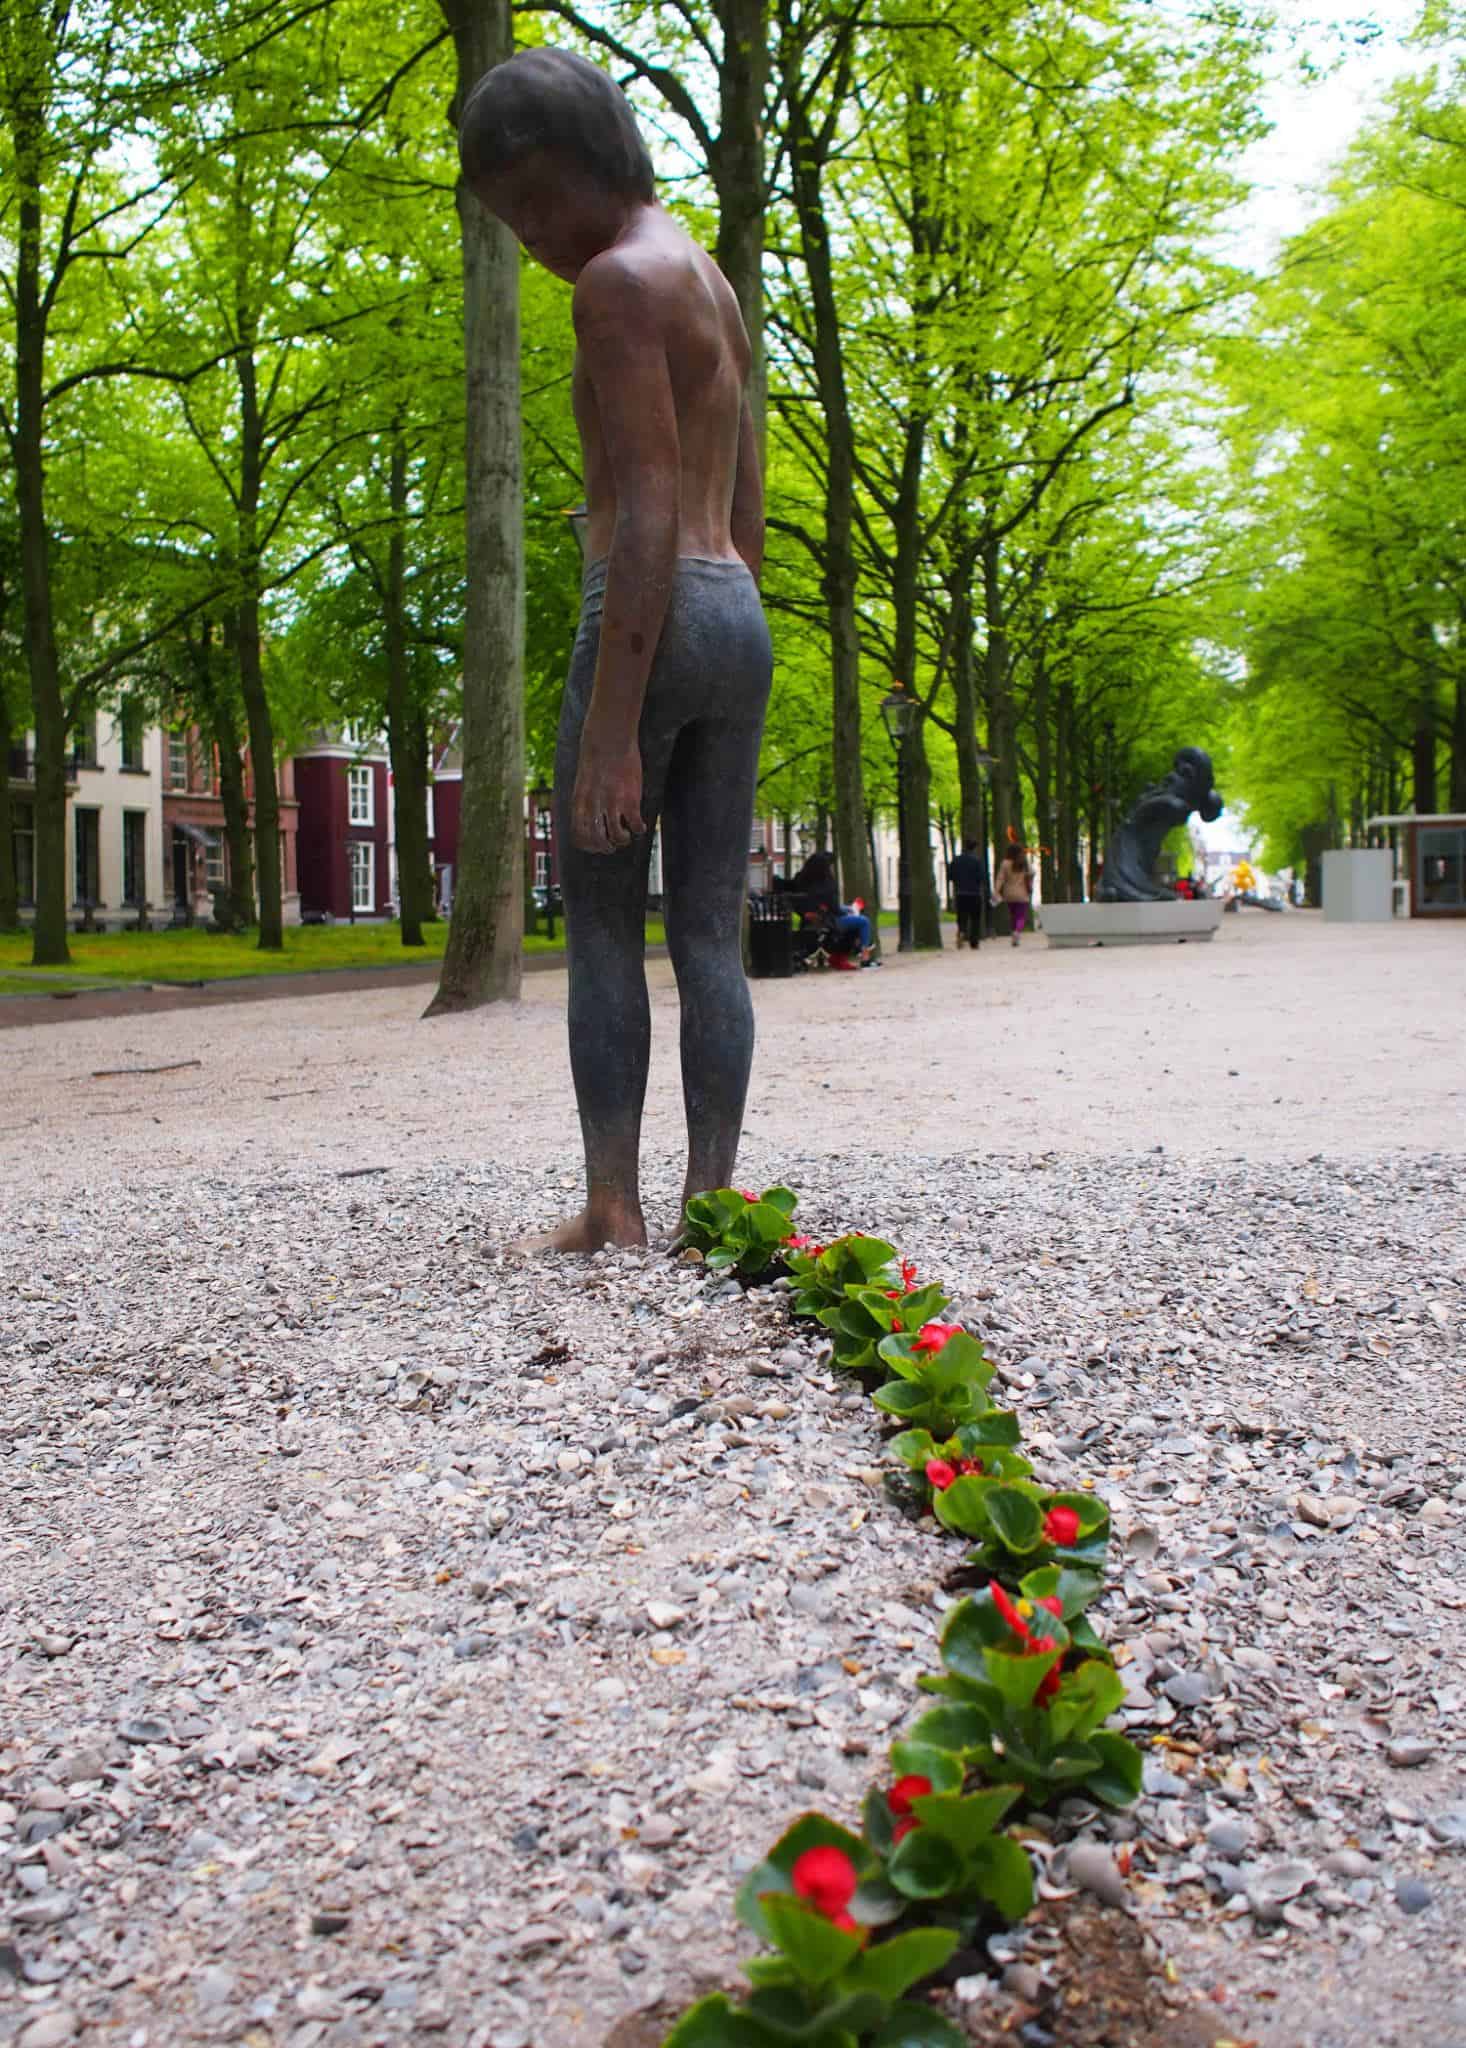 Weird sculpture in the Hague